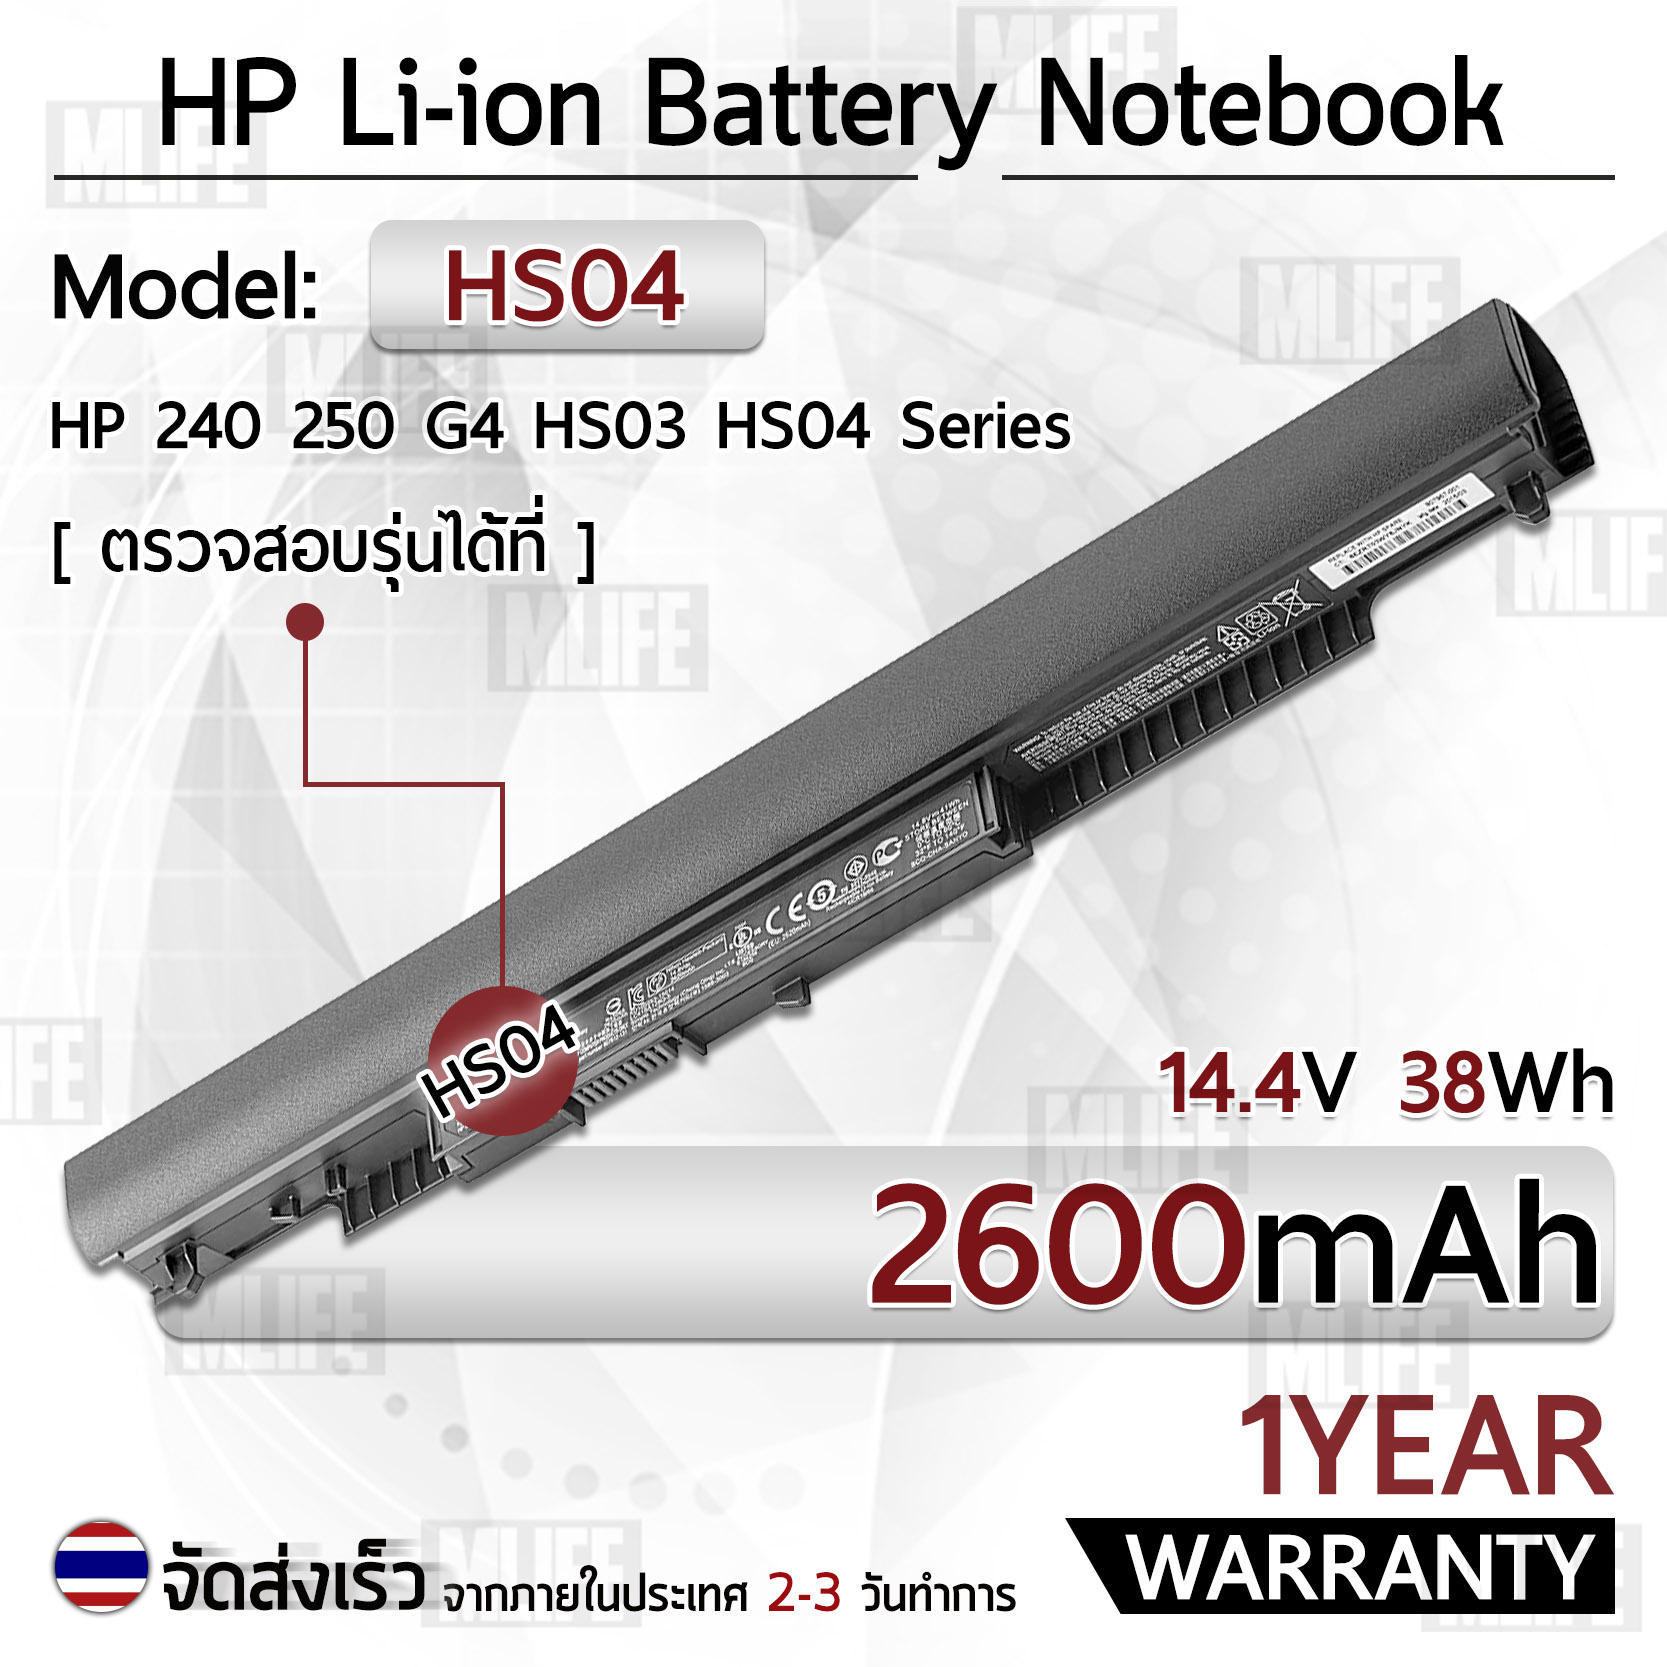 MLIFE - รับประกัน 1 ปี - แบตเตอรี่ โน้ตบุ๊ค แล็ปท็อป HP HS04 HS03 2600mAh สำหรับ 40 245 246 250 256 G4, 14, 15, HP 807956-001 807957-001 807612-421 HSTNN-LB6U HSTNN-LB6V N2L85AA 807611-421 Battery Notebook Laptop